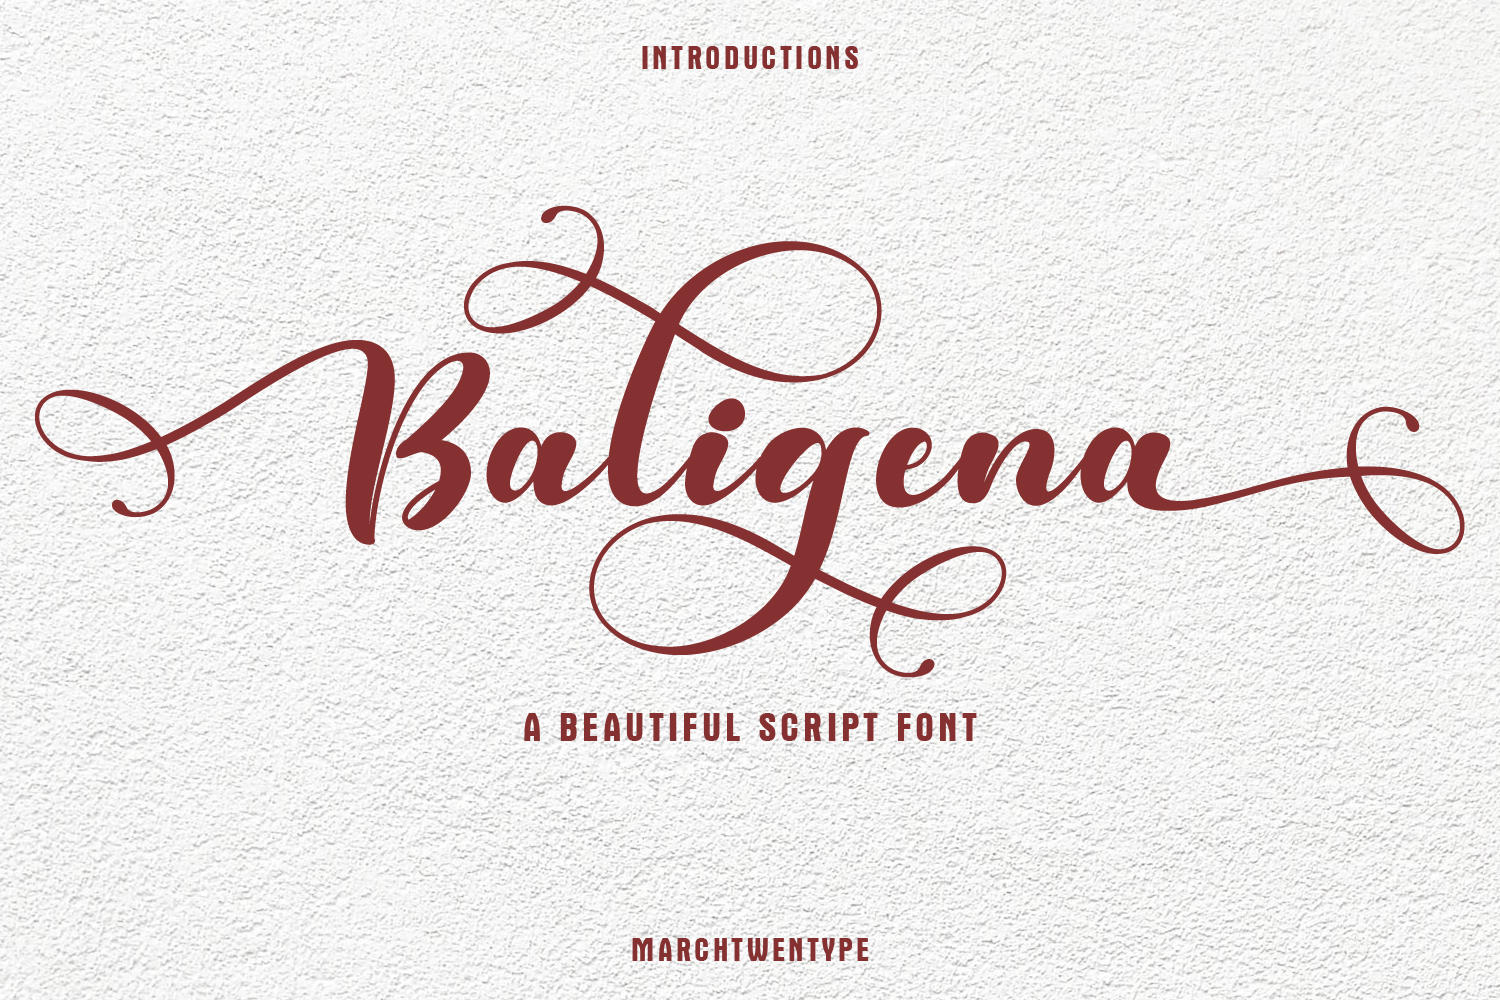 Baligena Script Font